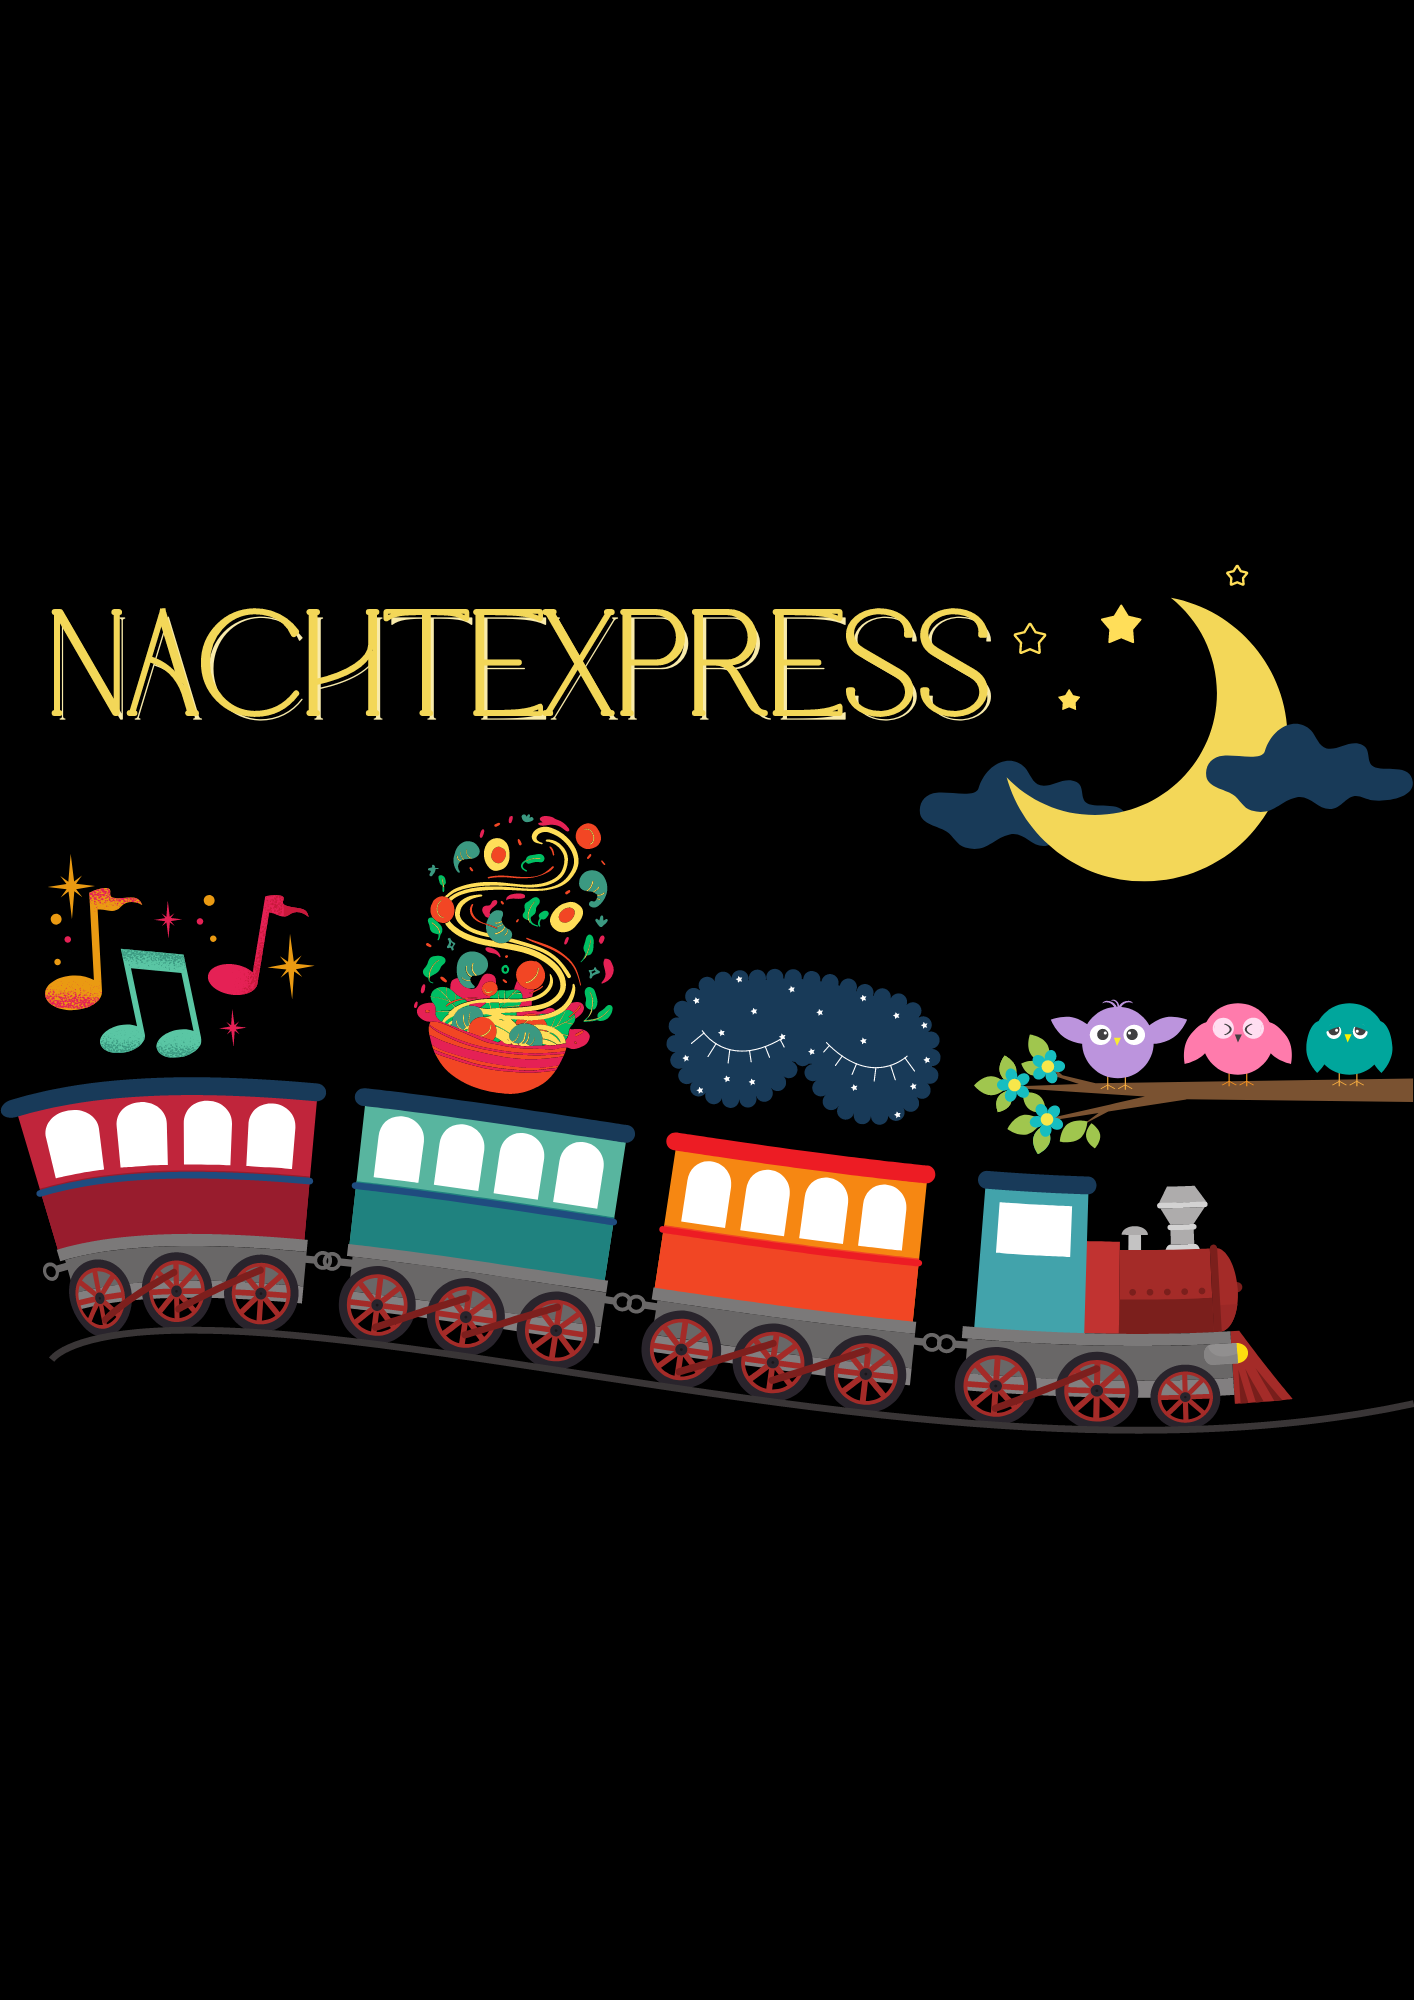 Nachtexpress: Haltestelle Music on stage